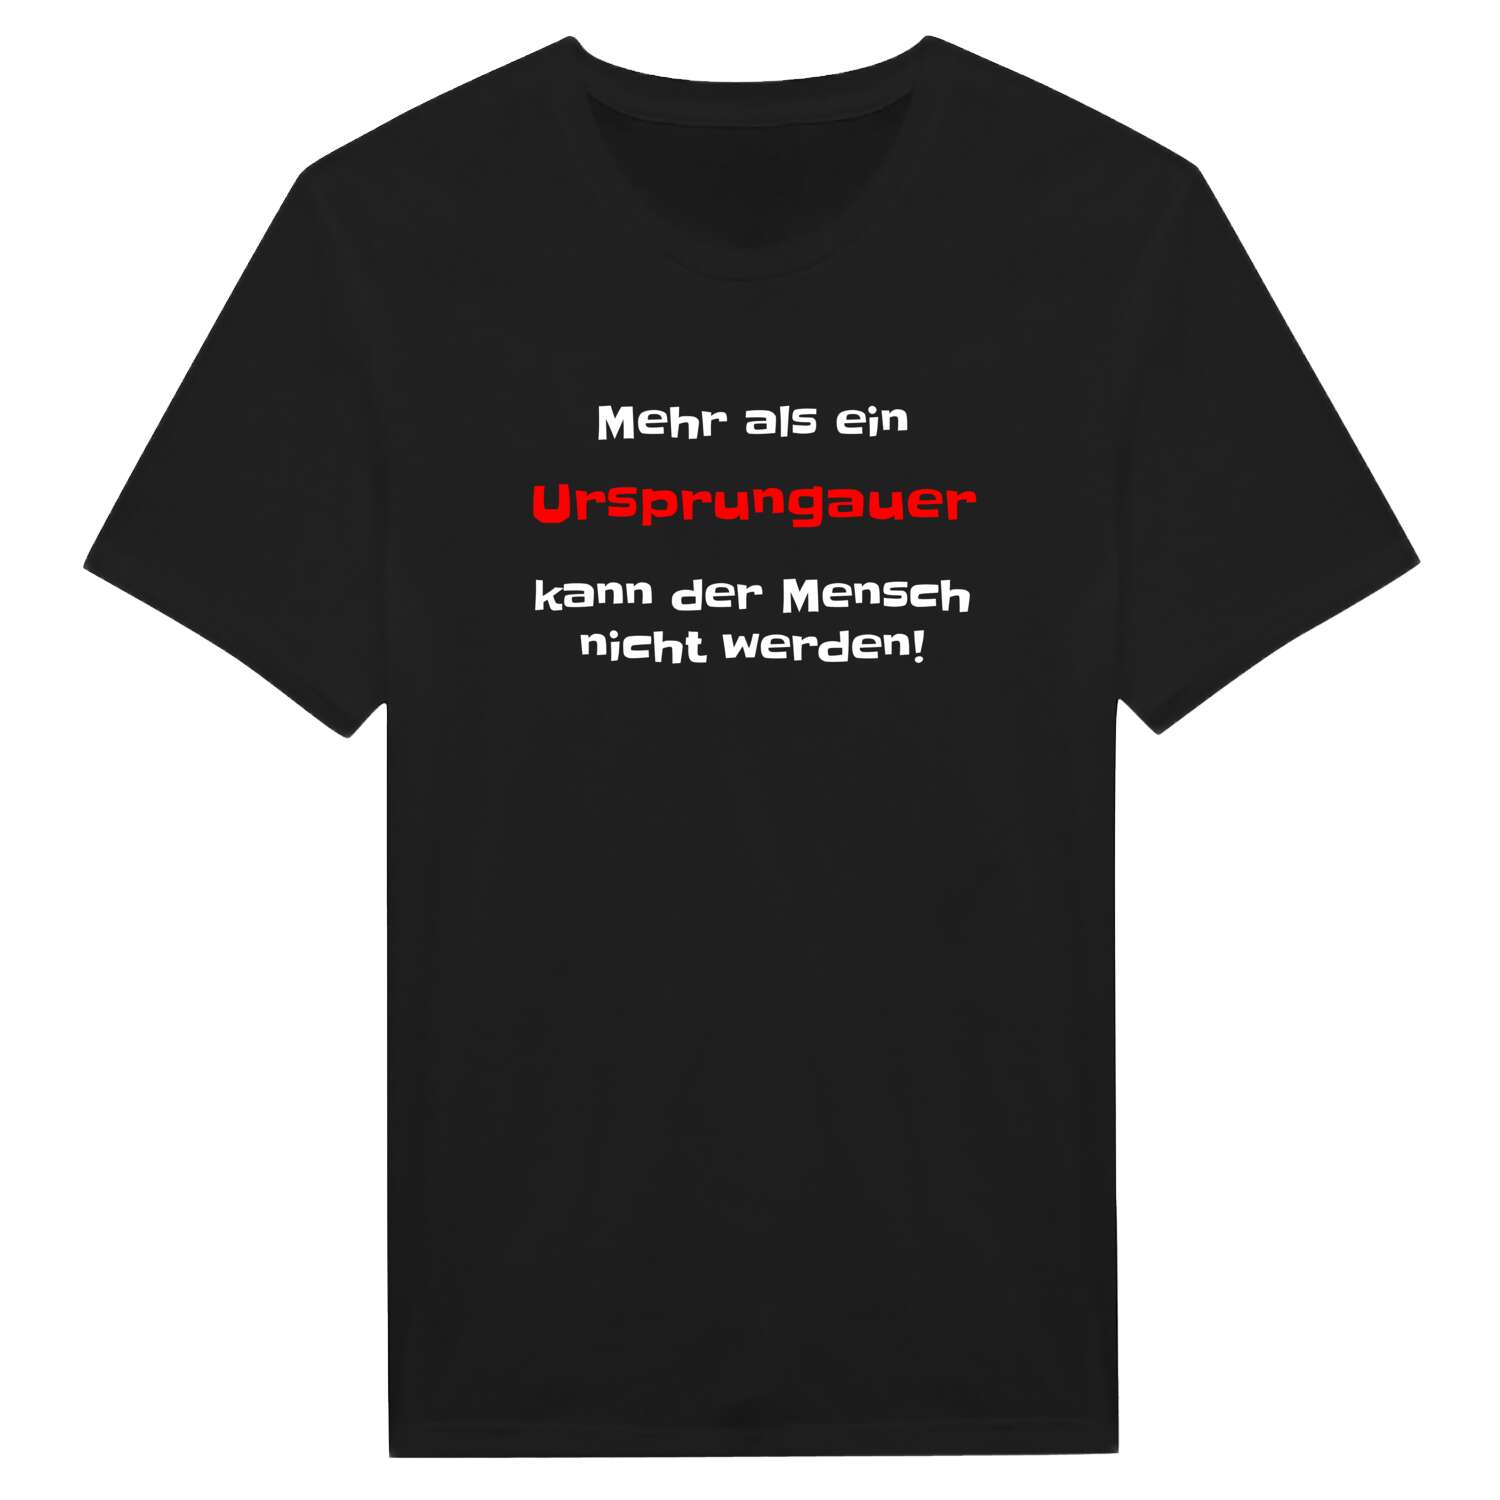 Ursprungau T-Shirt »Mehr als ein«